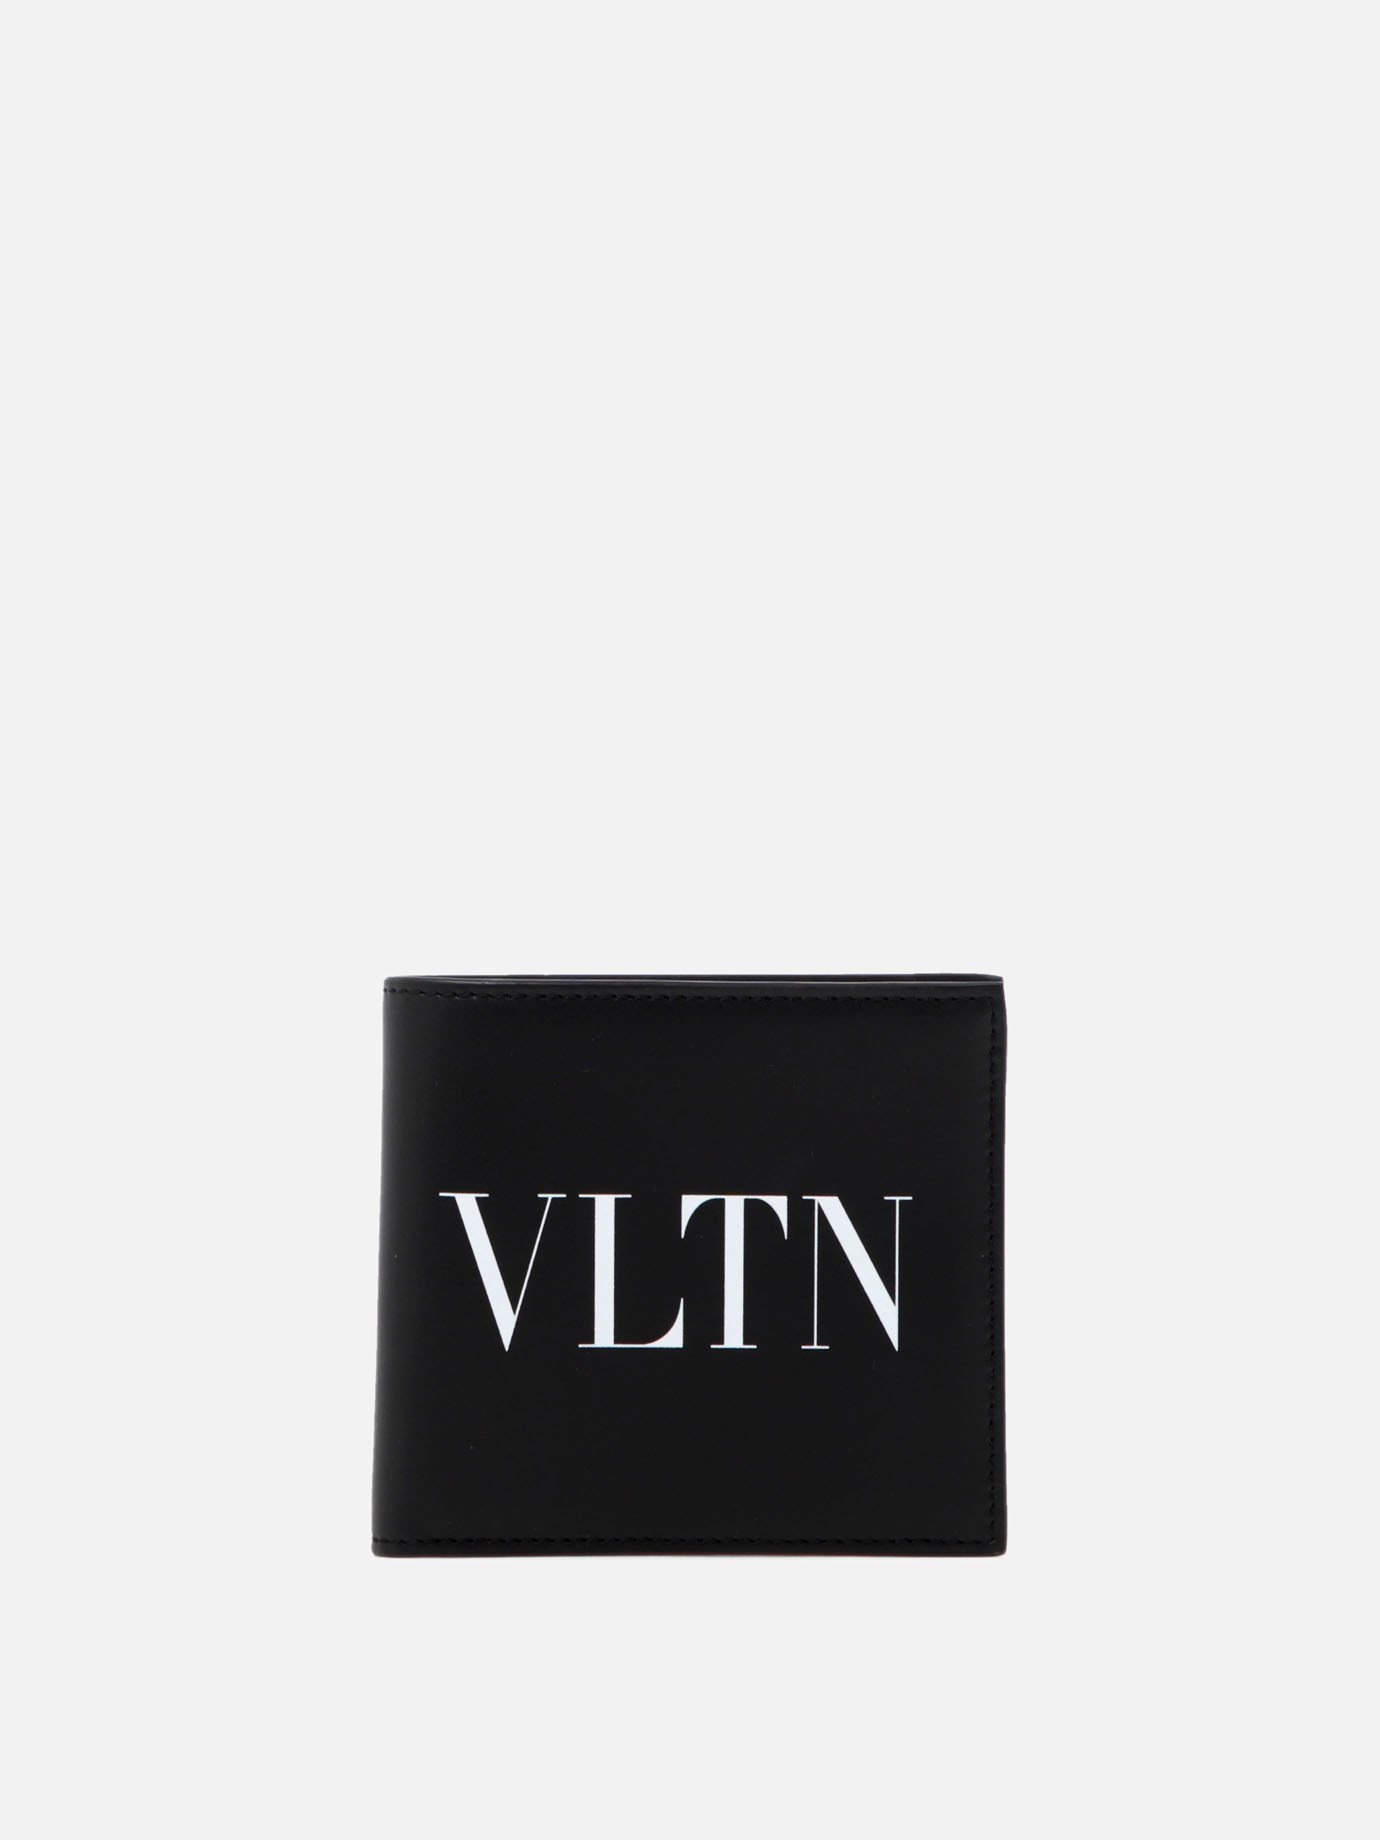  VLTN  walletby Valentino Garavani - 5